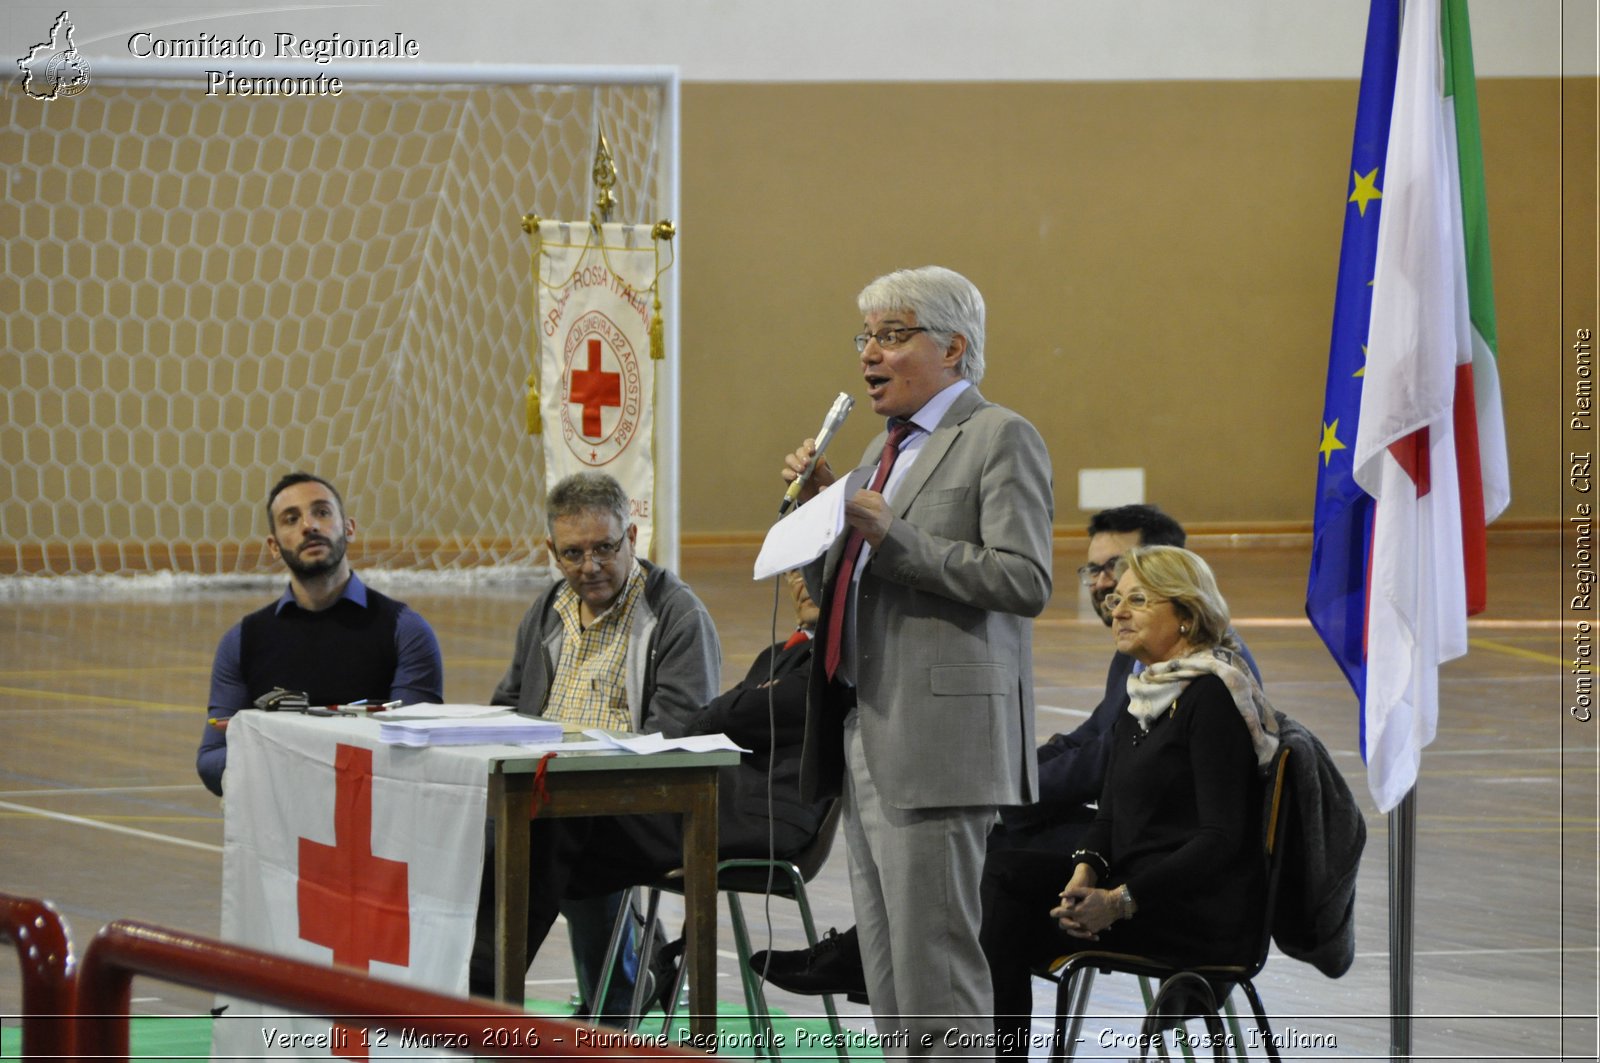 Vercelli 12 Marzo 2016 - Riunione Regionale Presidenti e Consiglieri - Croce Rossa Italiana- Comitato Regionale del Piemonte